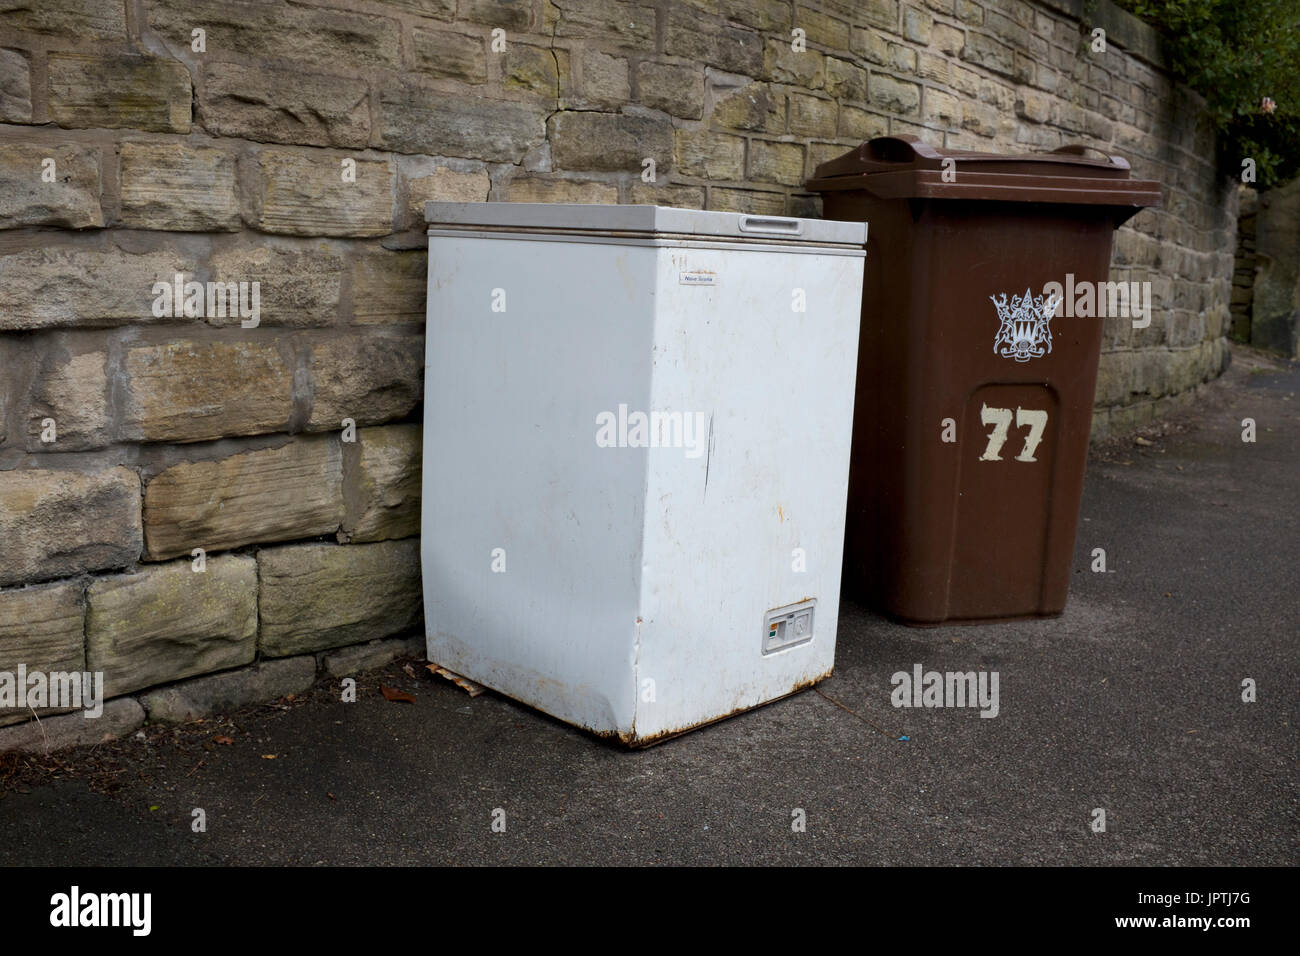 Un aparato doméstico y brown bin que contiene elementos, esperando a ser recogidos para su reciclaje. Foto de stock